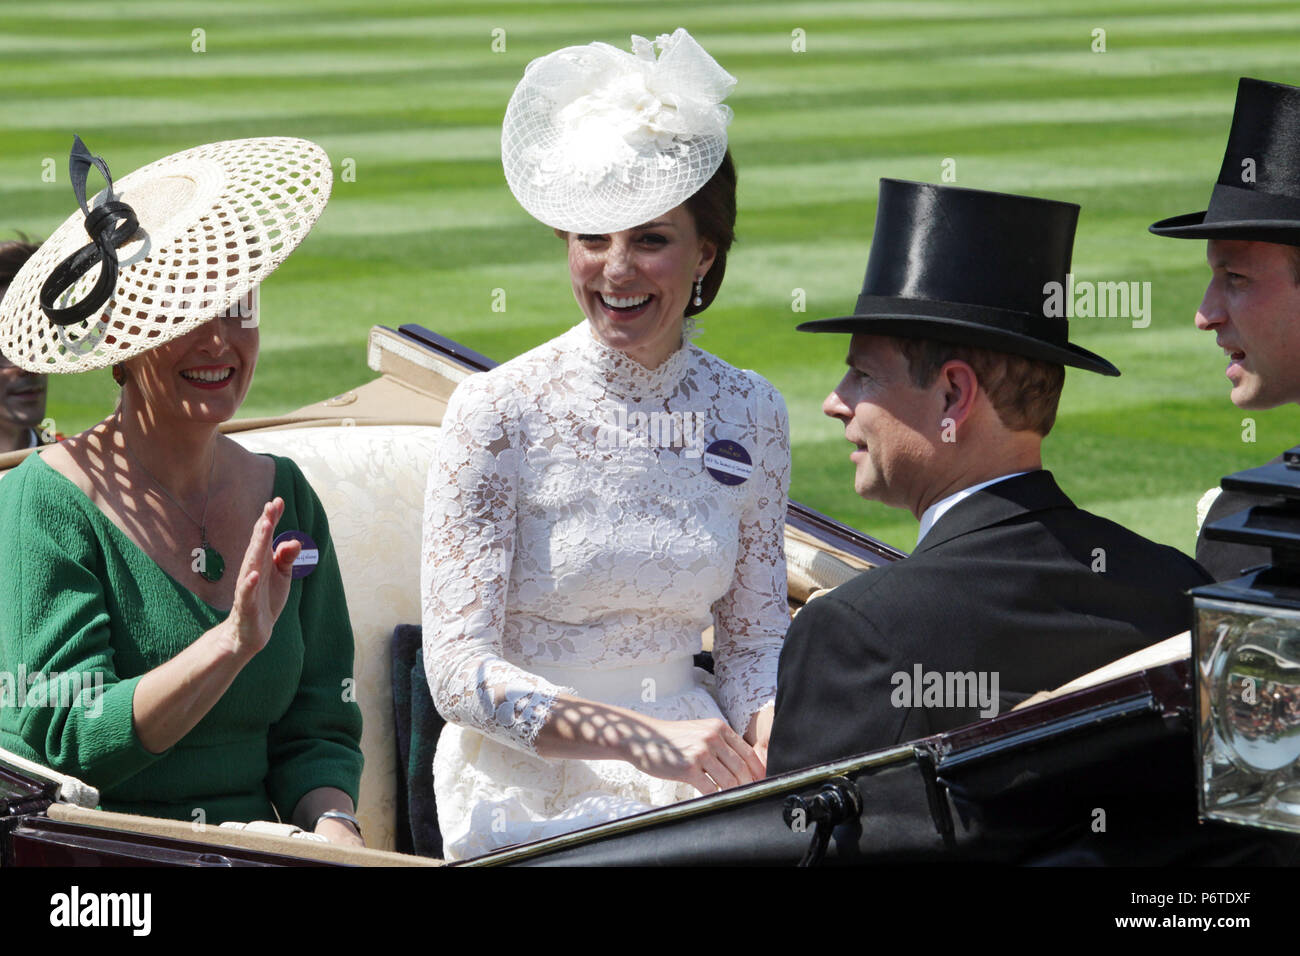 Le Royal Ascot, défilé royal. Sophie, comtesse de Wessex, Prince Edward, Catherine, duchesse de Cambridge et William Prince arrivant à l'hippodrome Banque D'Images